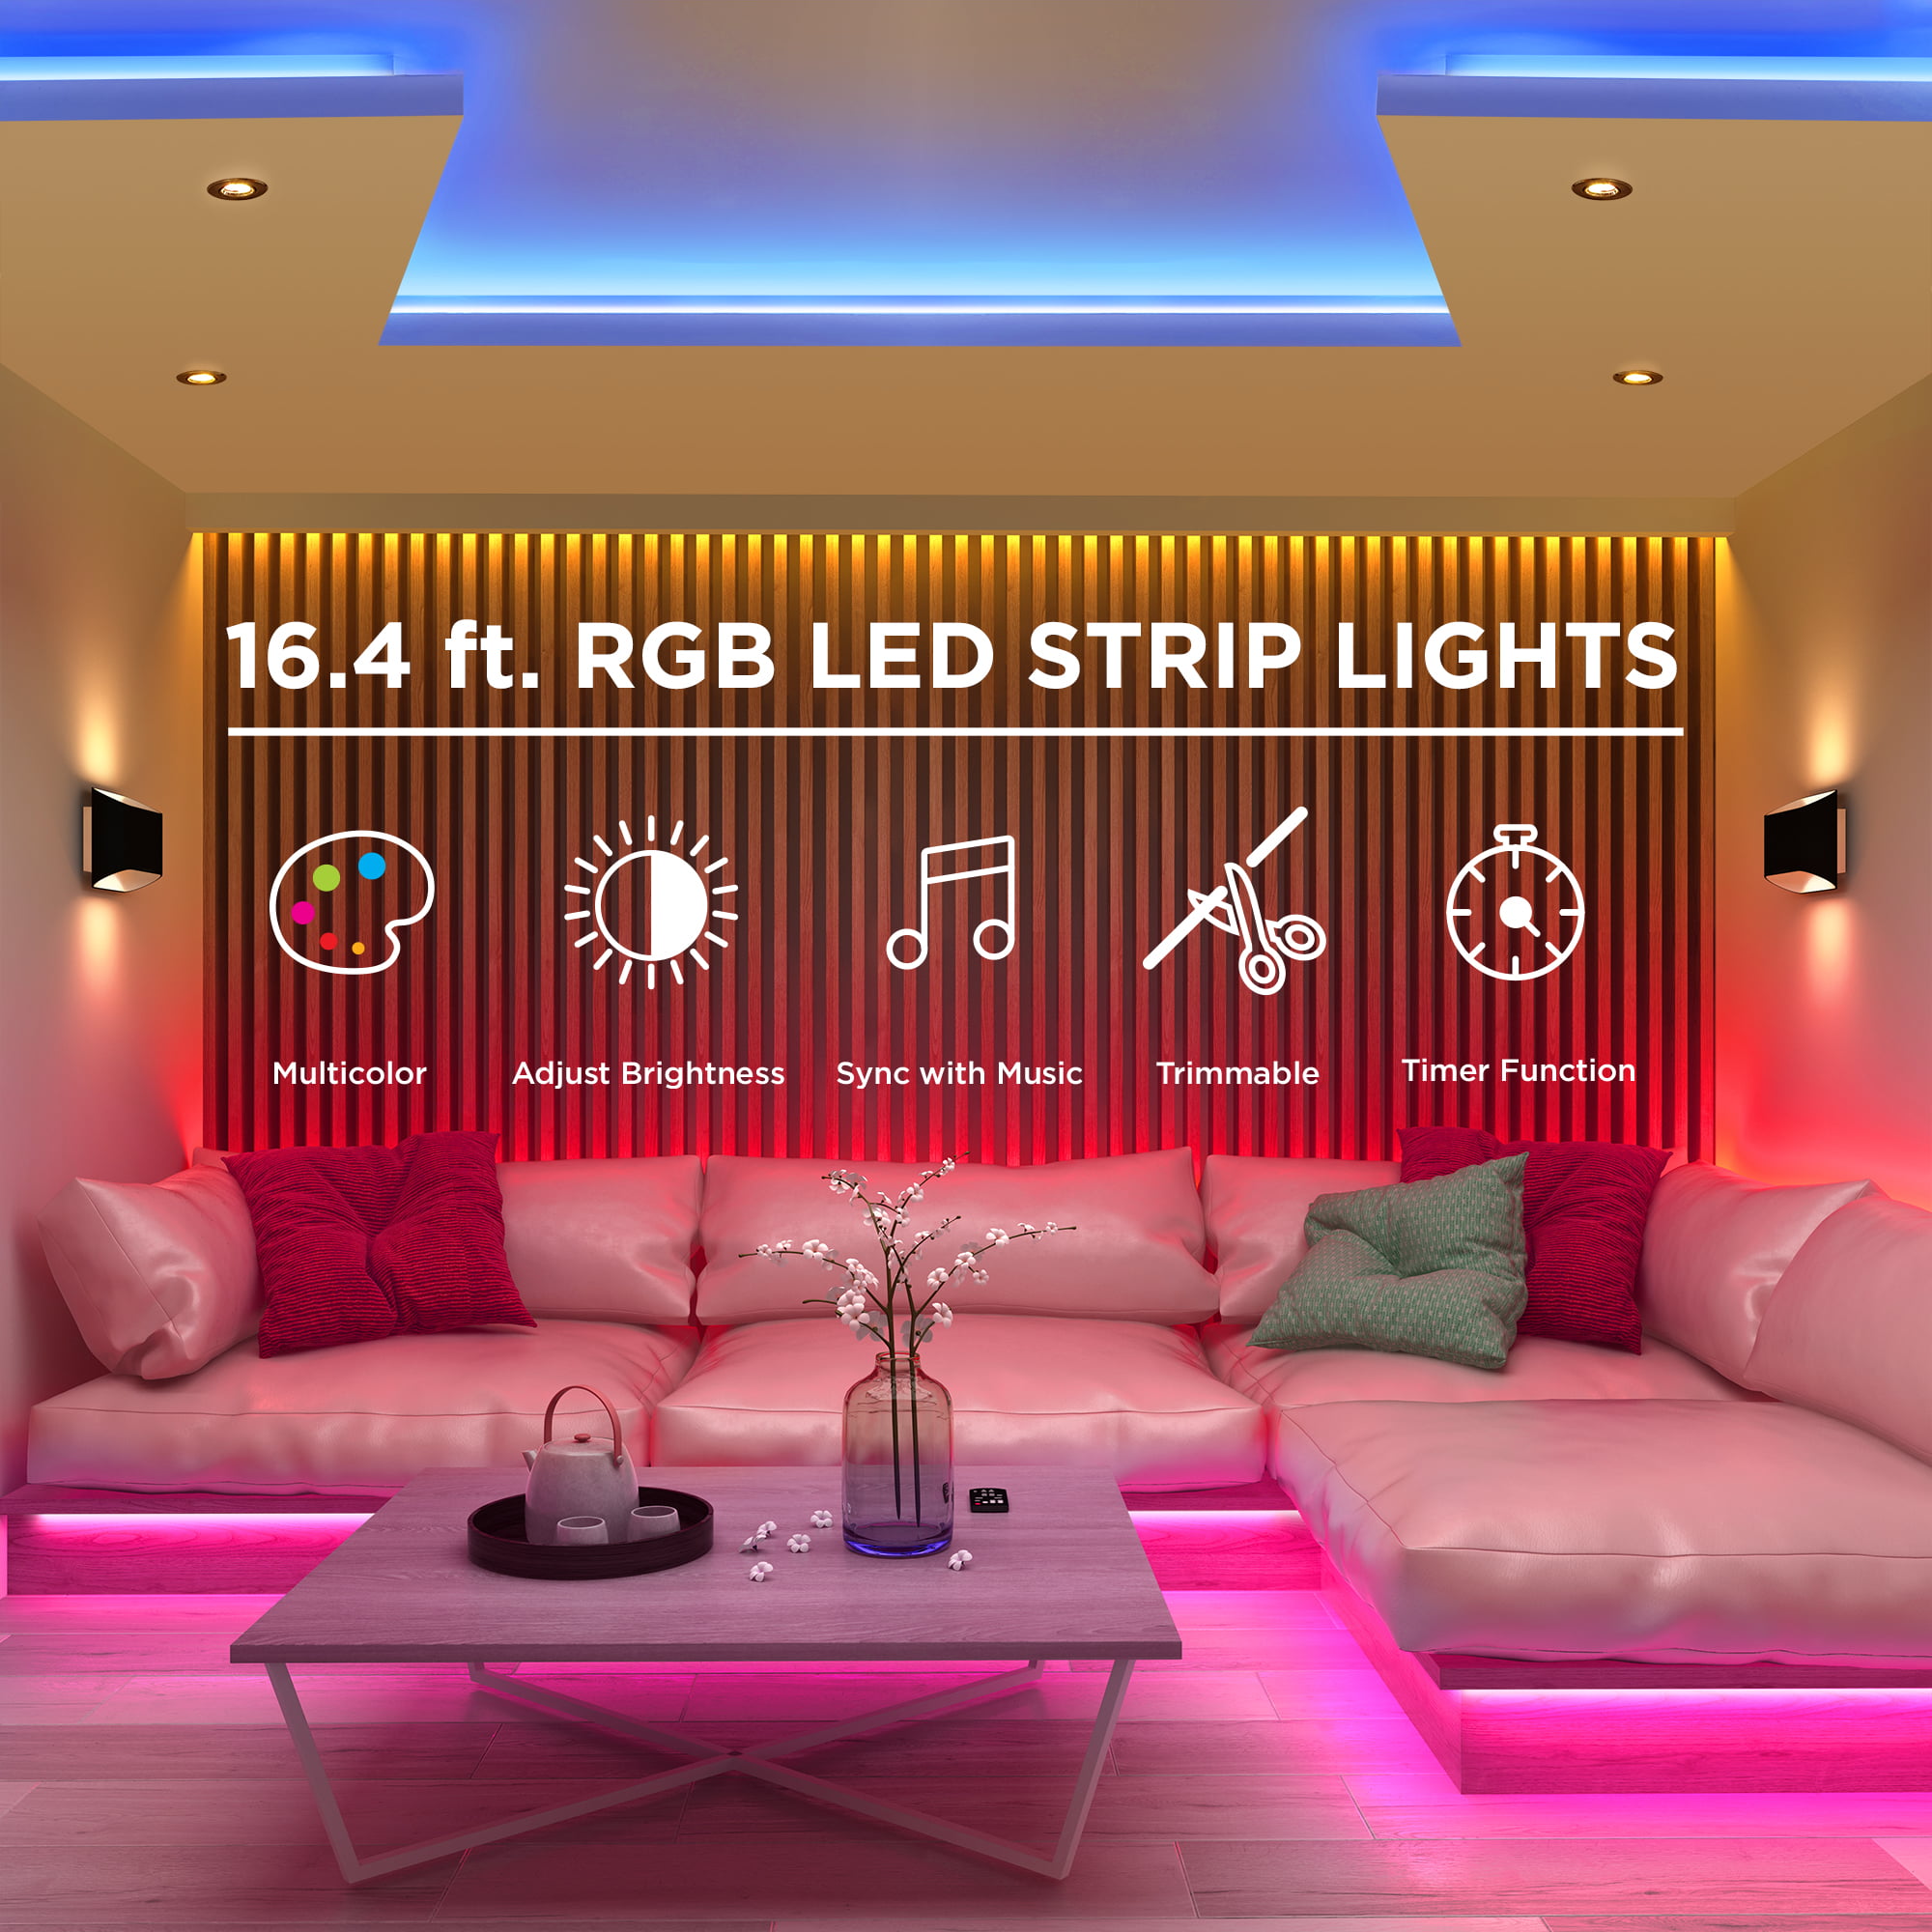 61761 show original title Details about   Pressure LIGHT SET STICK ON 3 LED 3 pieces